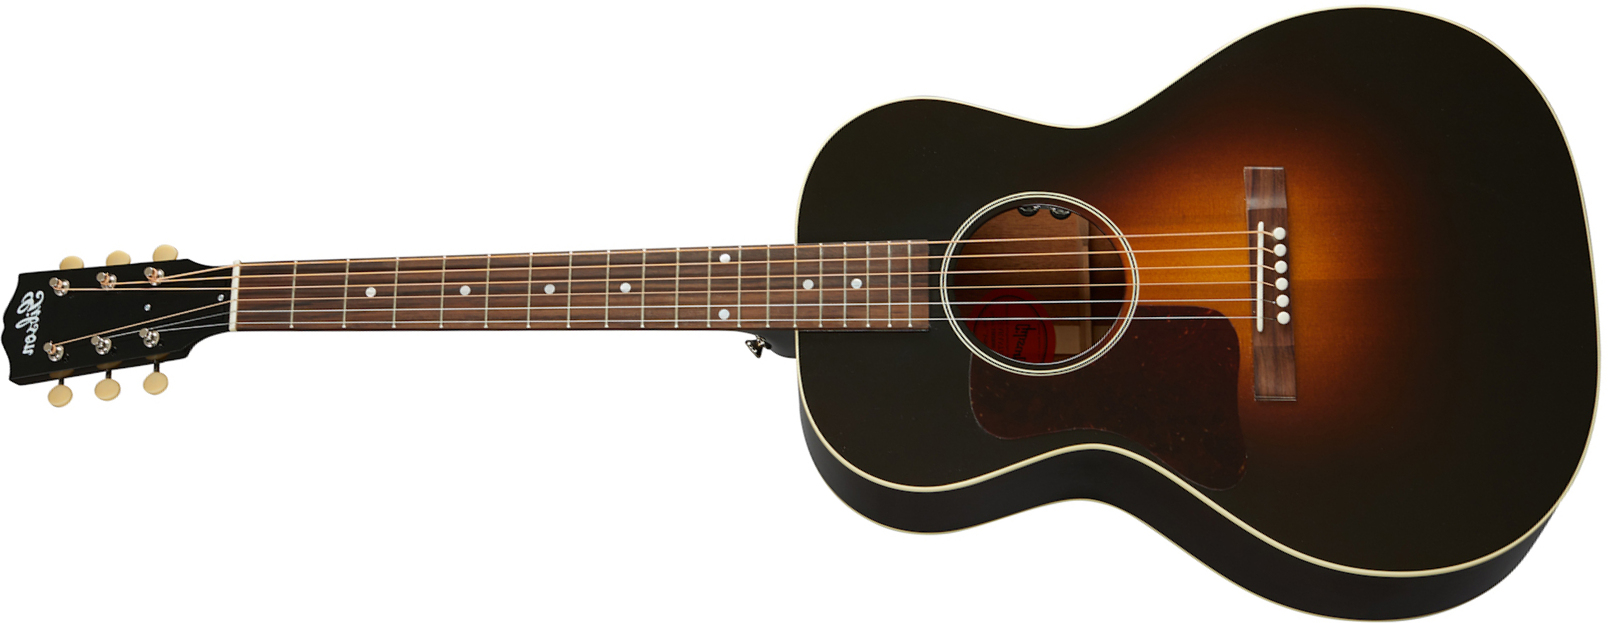 Gibson L-00 Original Lh 2020 Parlor Gaucher Epicea Acajou Rw - Vintage Sunburst - Elektro-akoestische gitaar - Main picture